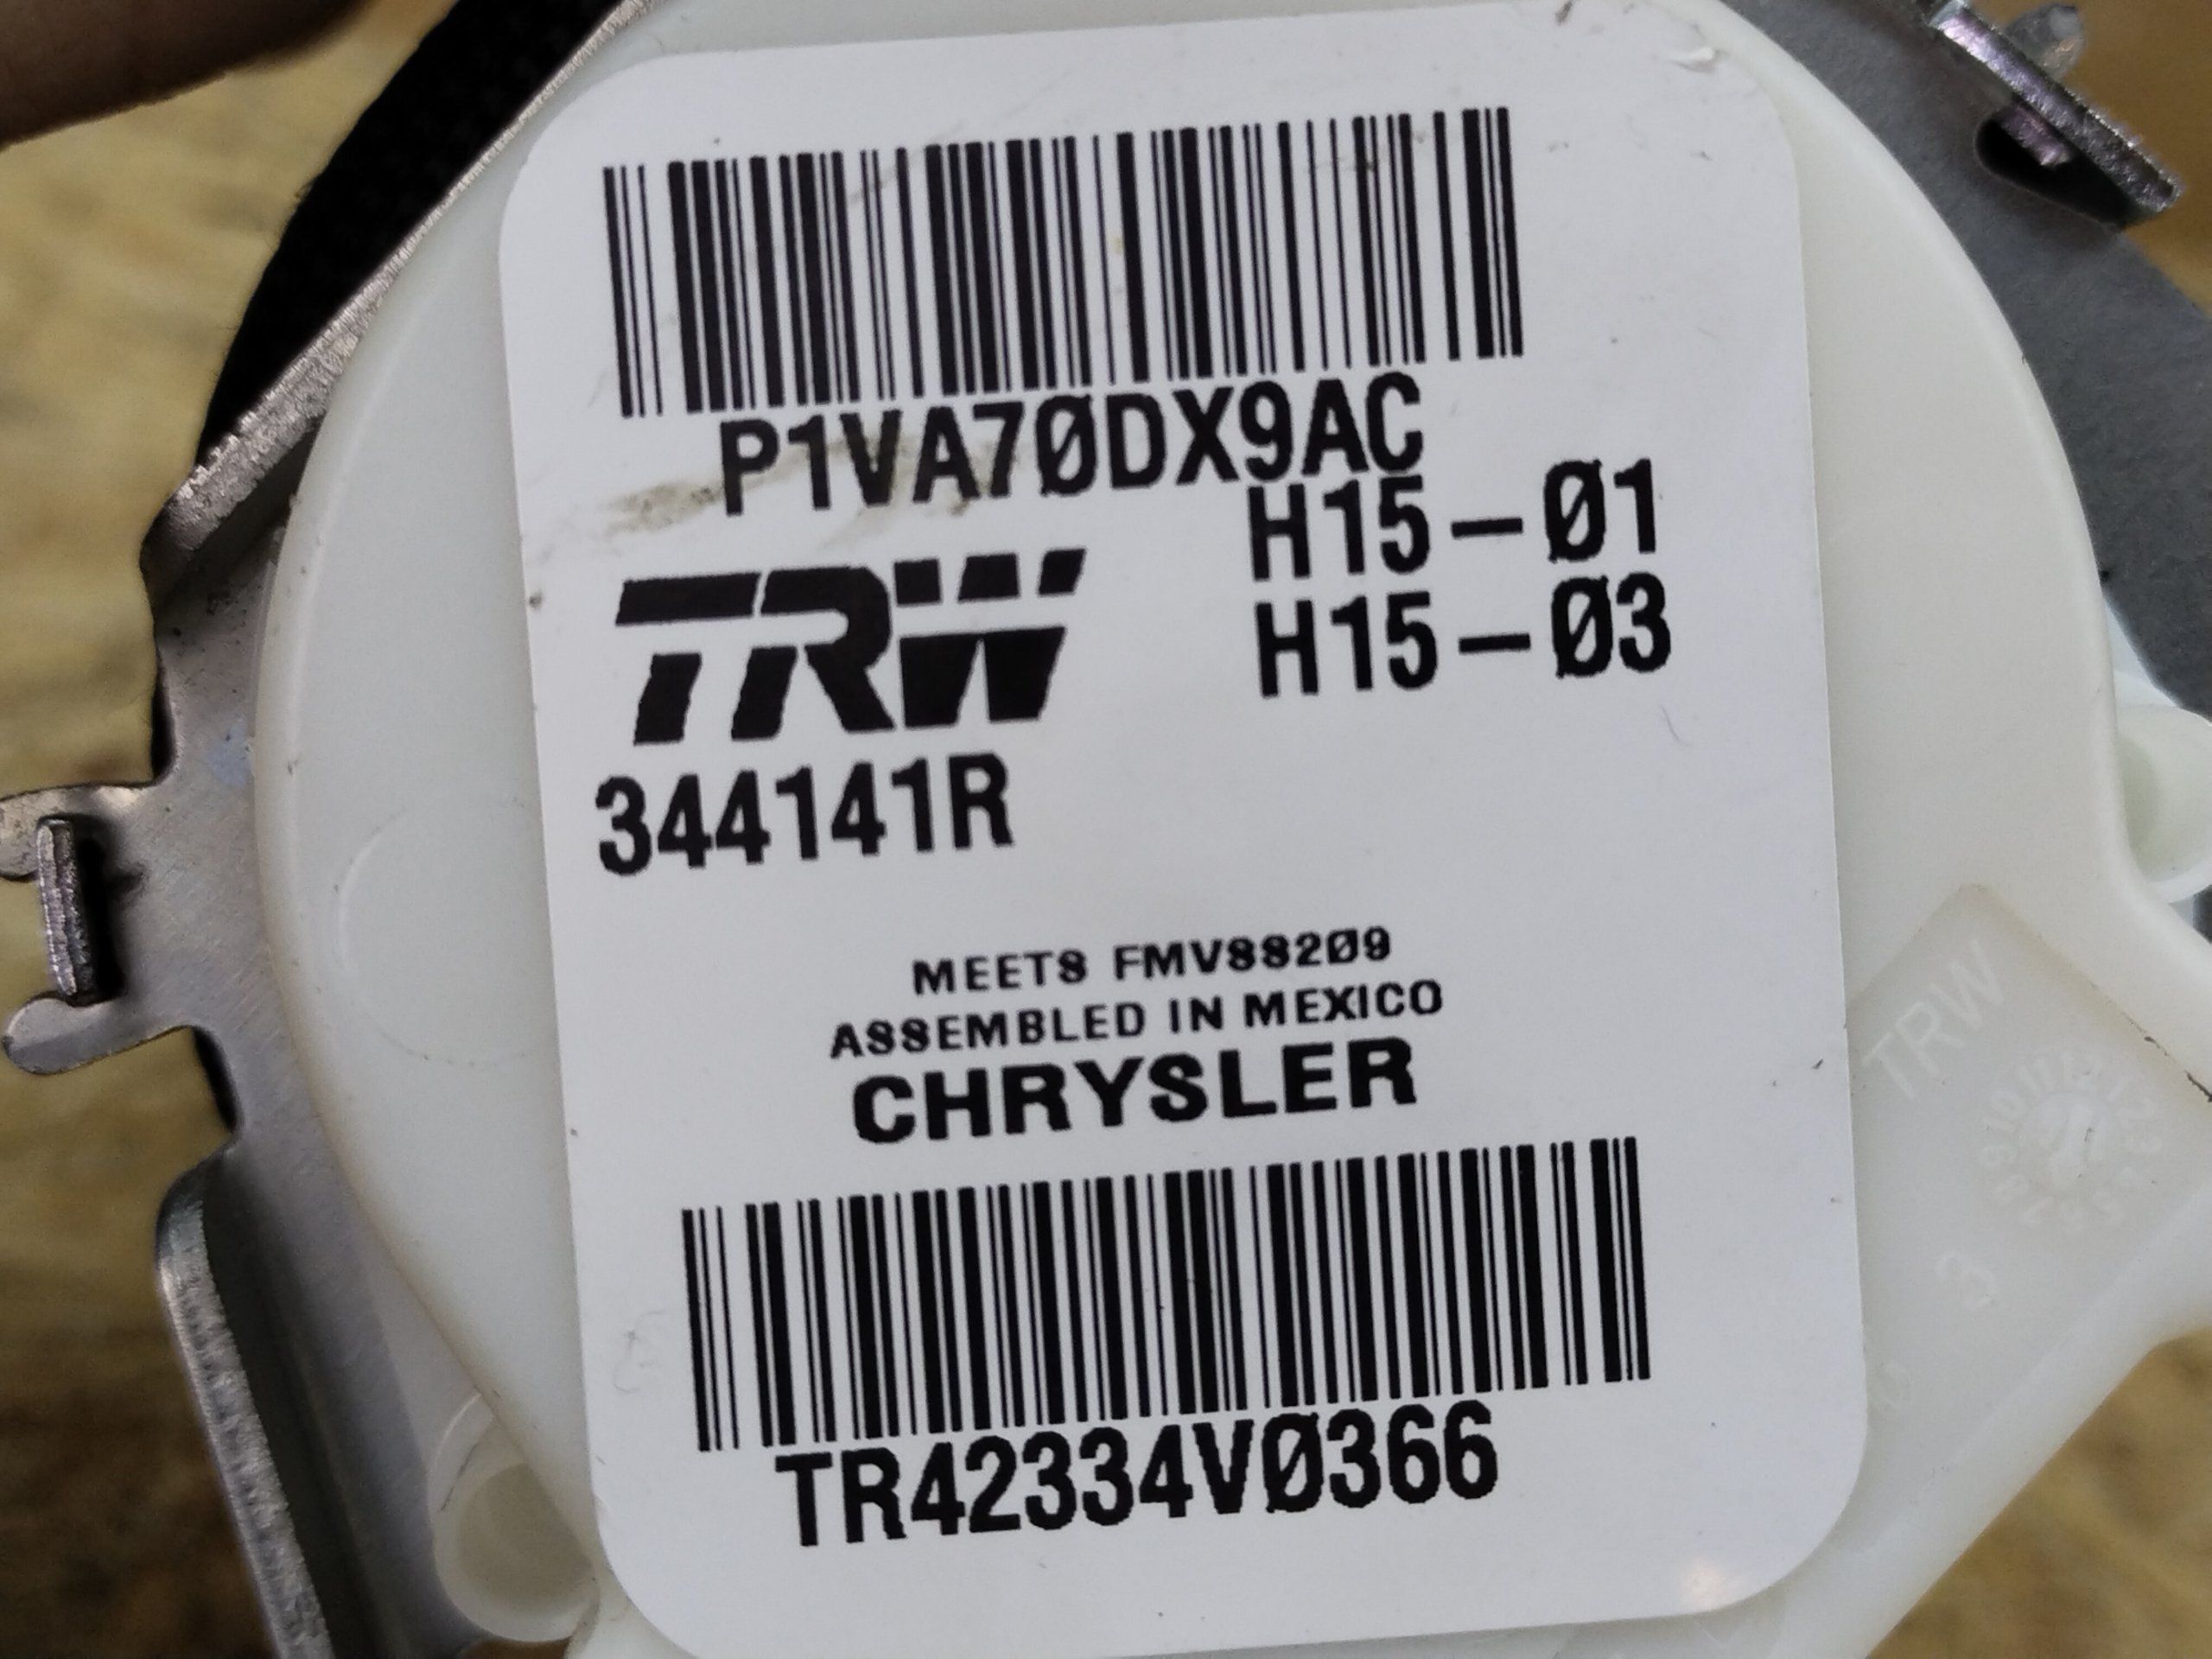 Chrysler 200 2014-2017 ремень безопасности задний правый P1VA70DX9AC